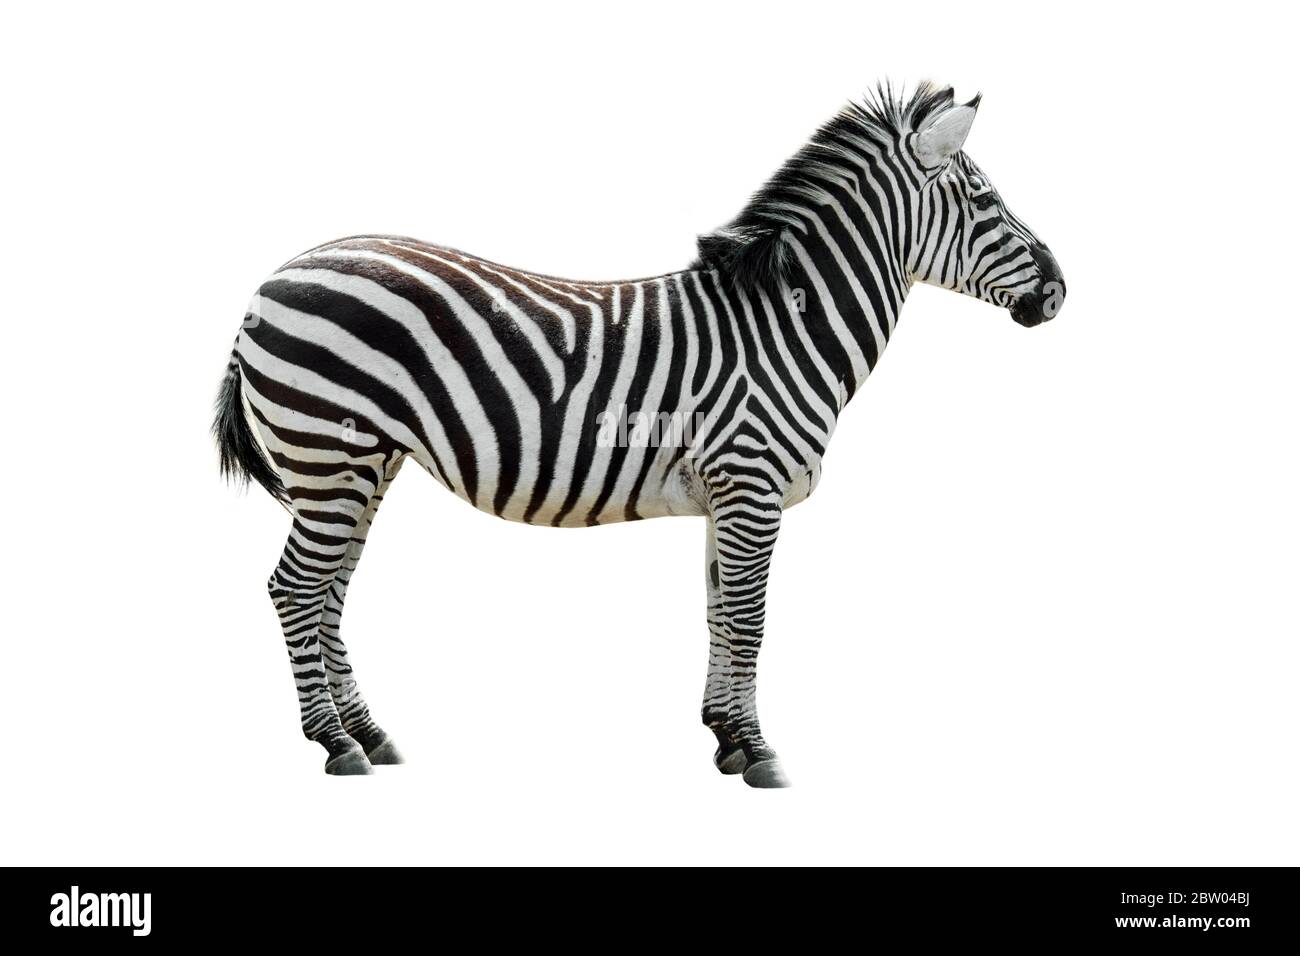 Plains zebra / common zebra (Equus quagga / Equus burchellii) against white background Stock Photo